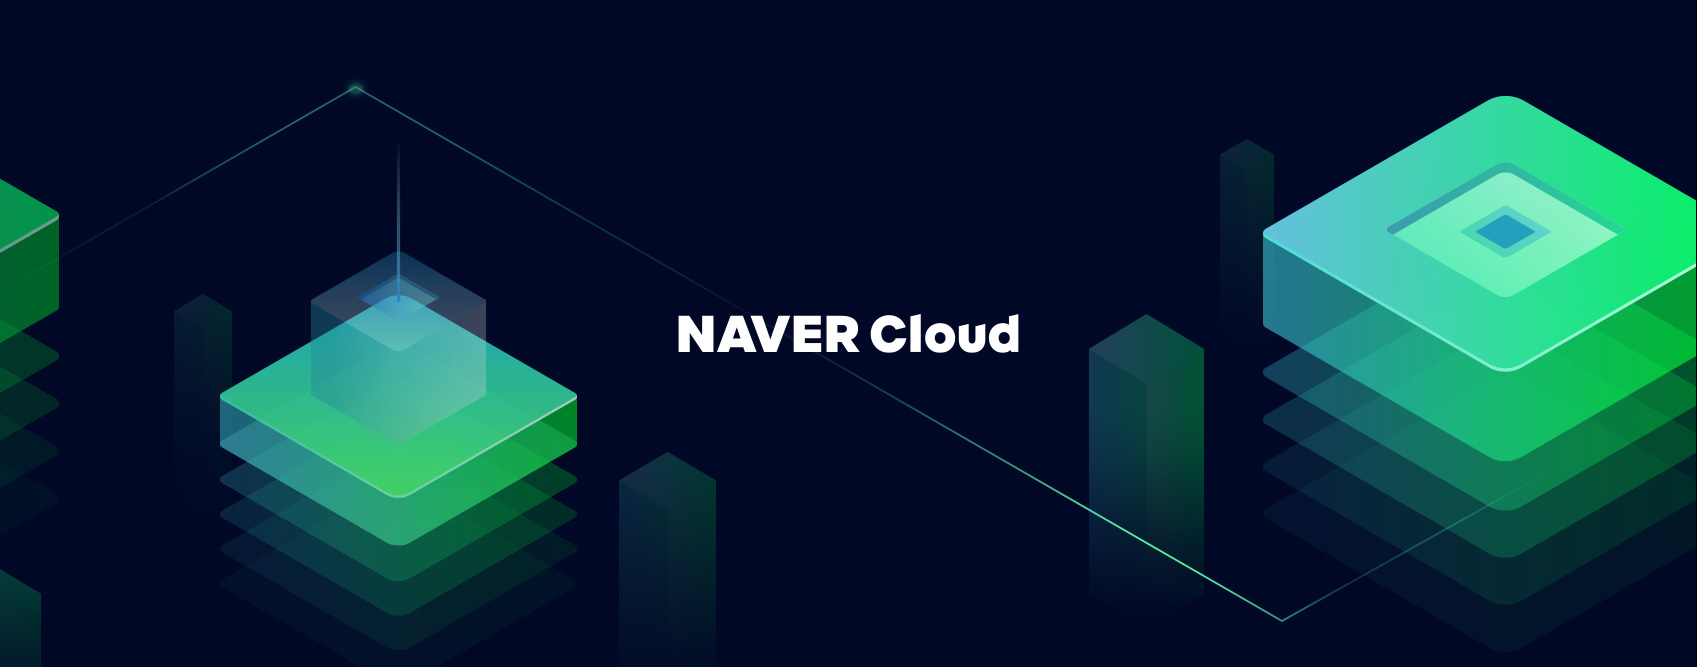 Naver Cloud Design Sustaining